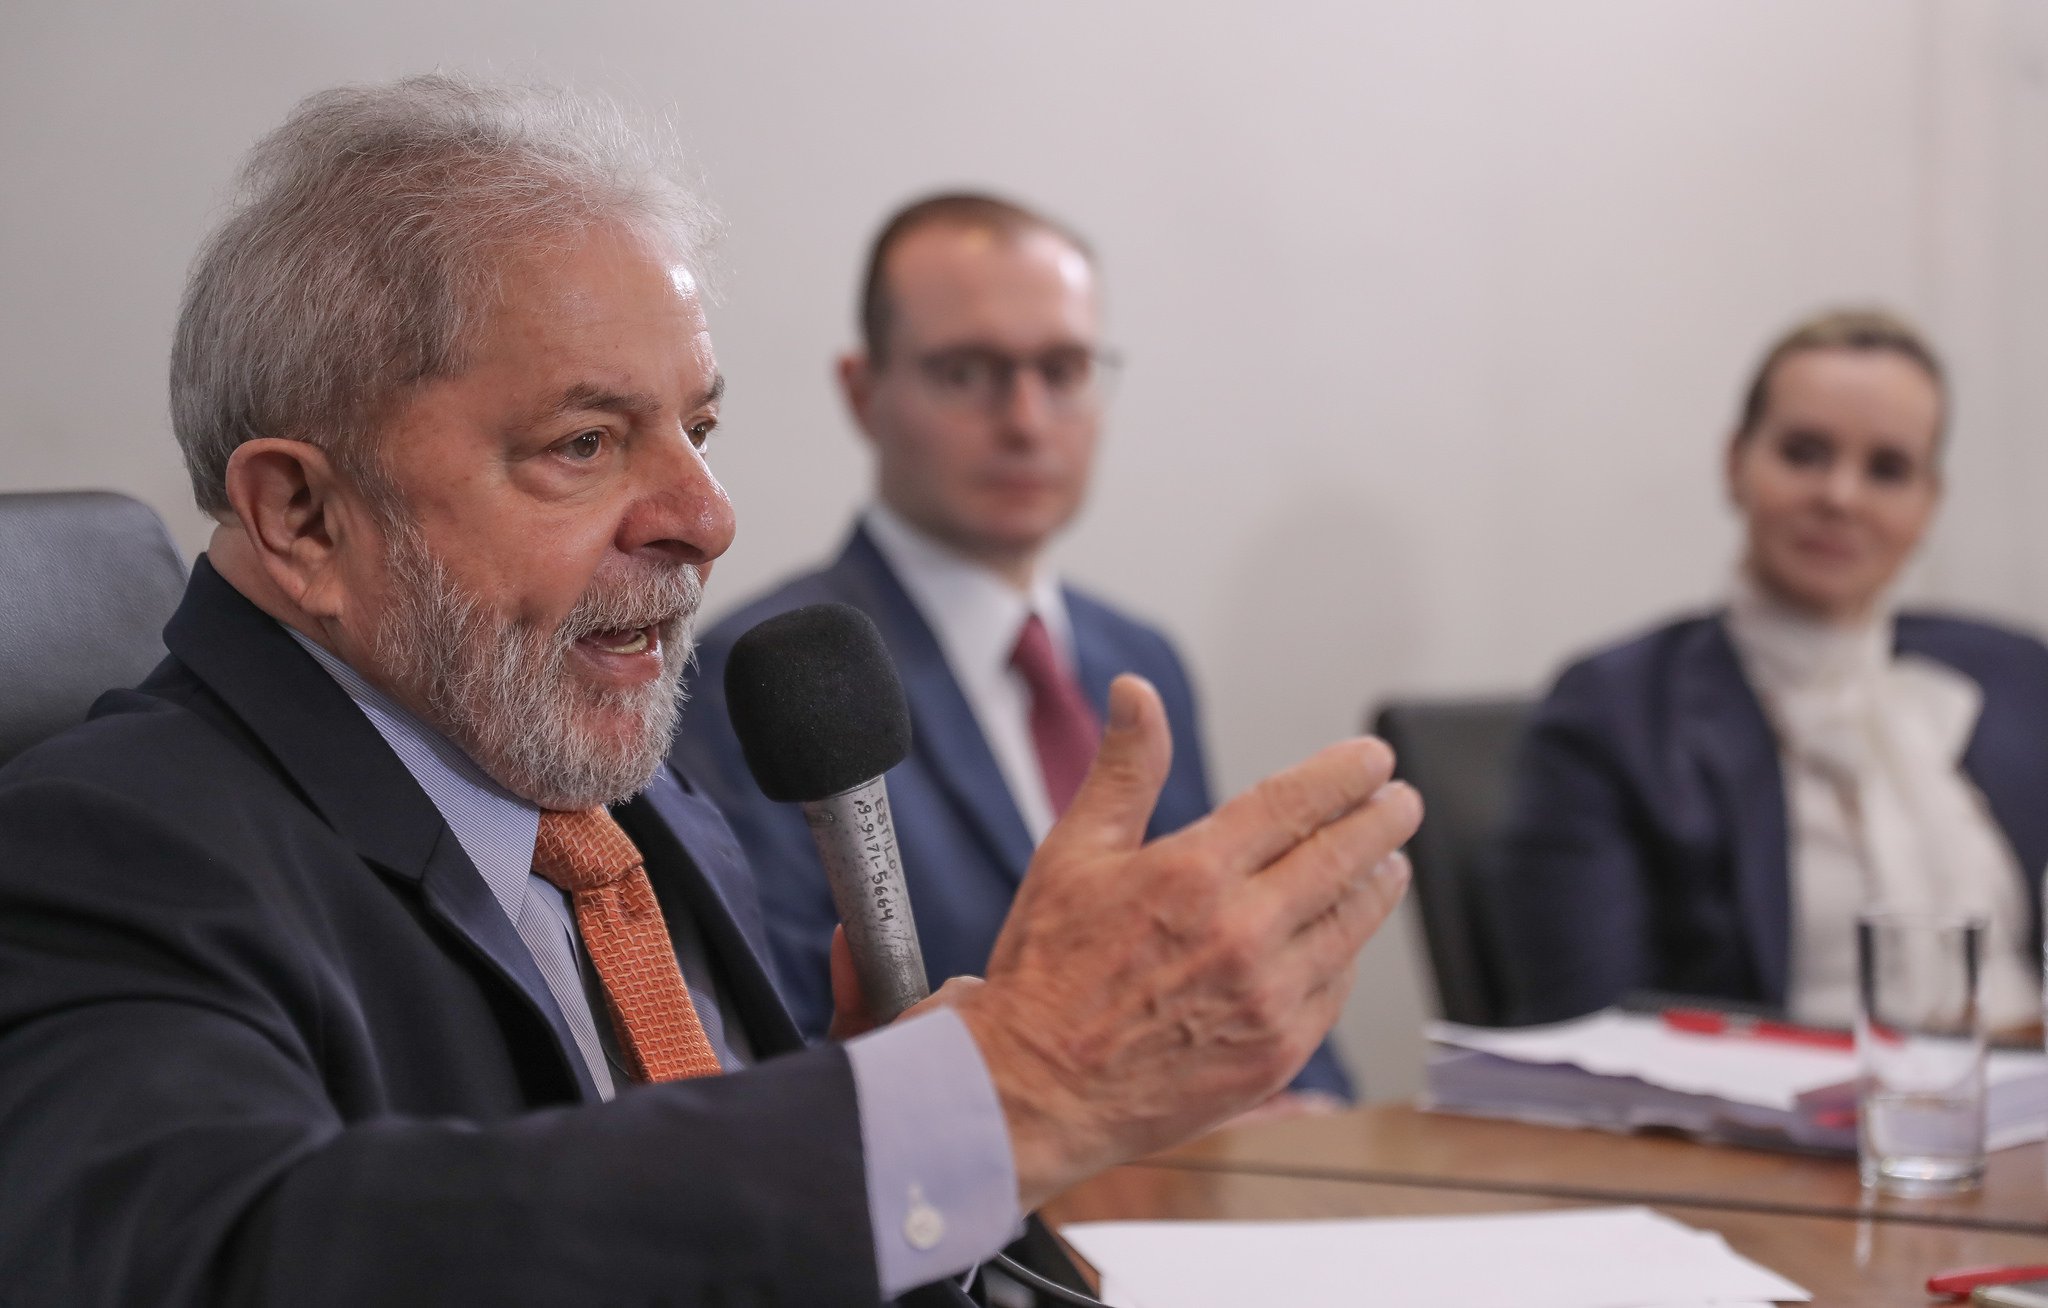 Juíza aumenta perseguição política a Lula